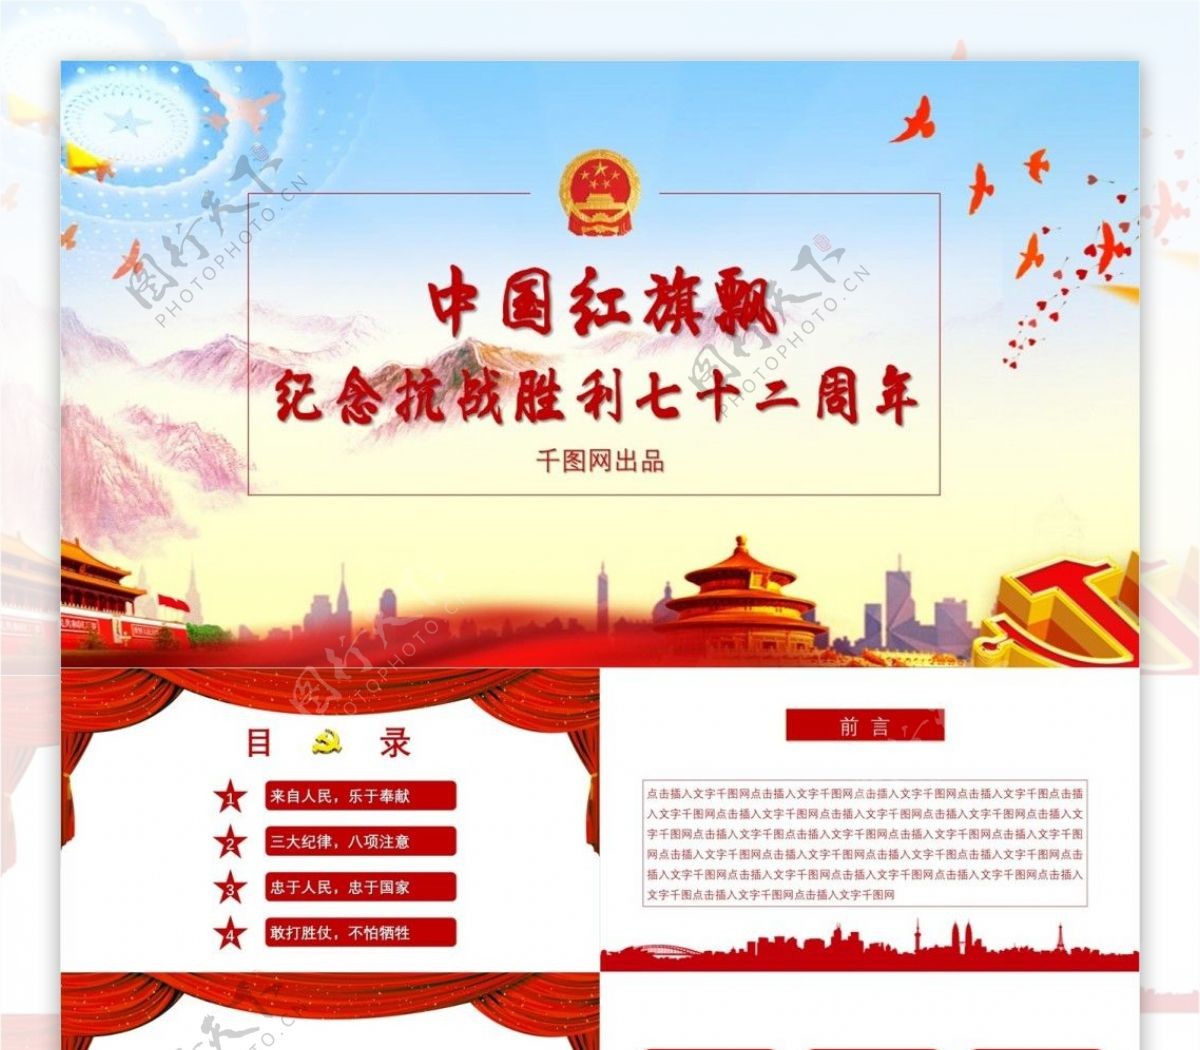 中国红旗飘铁血纪念抗战胜利72周年PPT模板